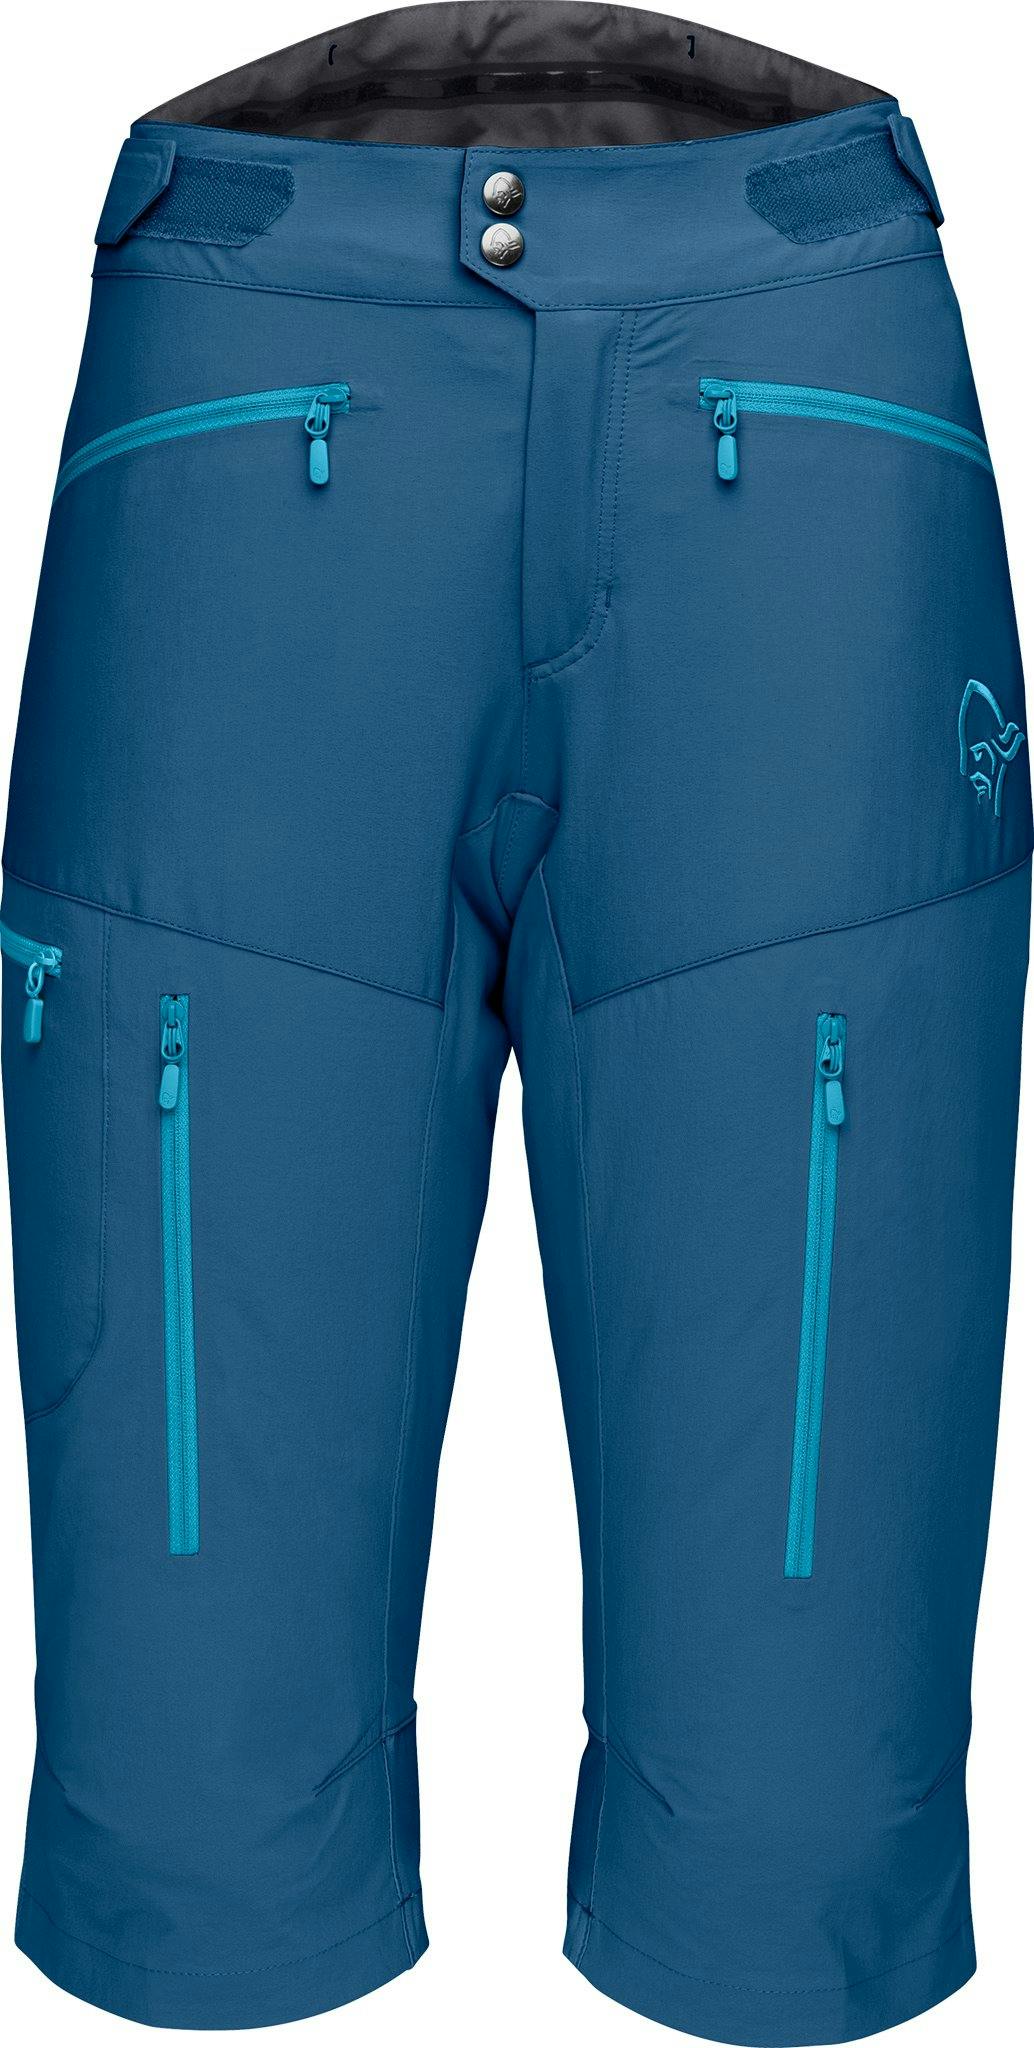 Product image for Fjørå Flex1 Shorts - Women's